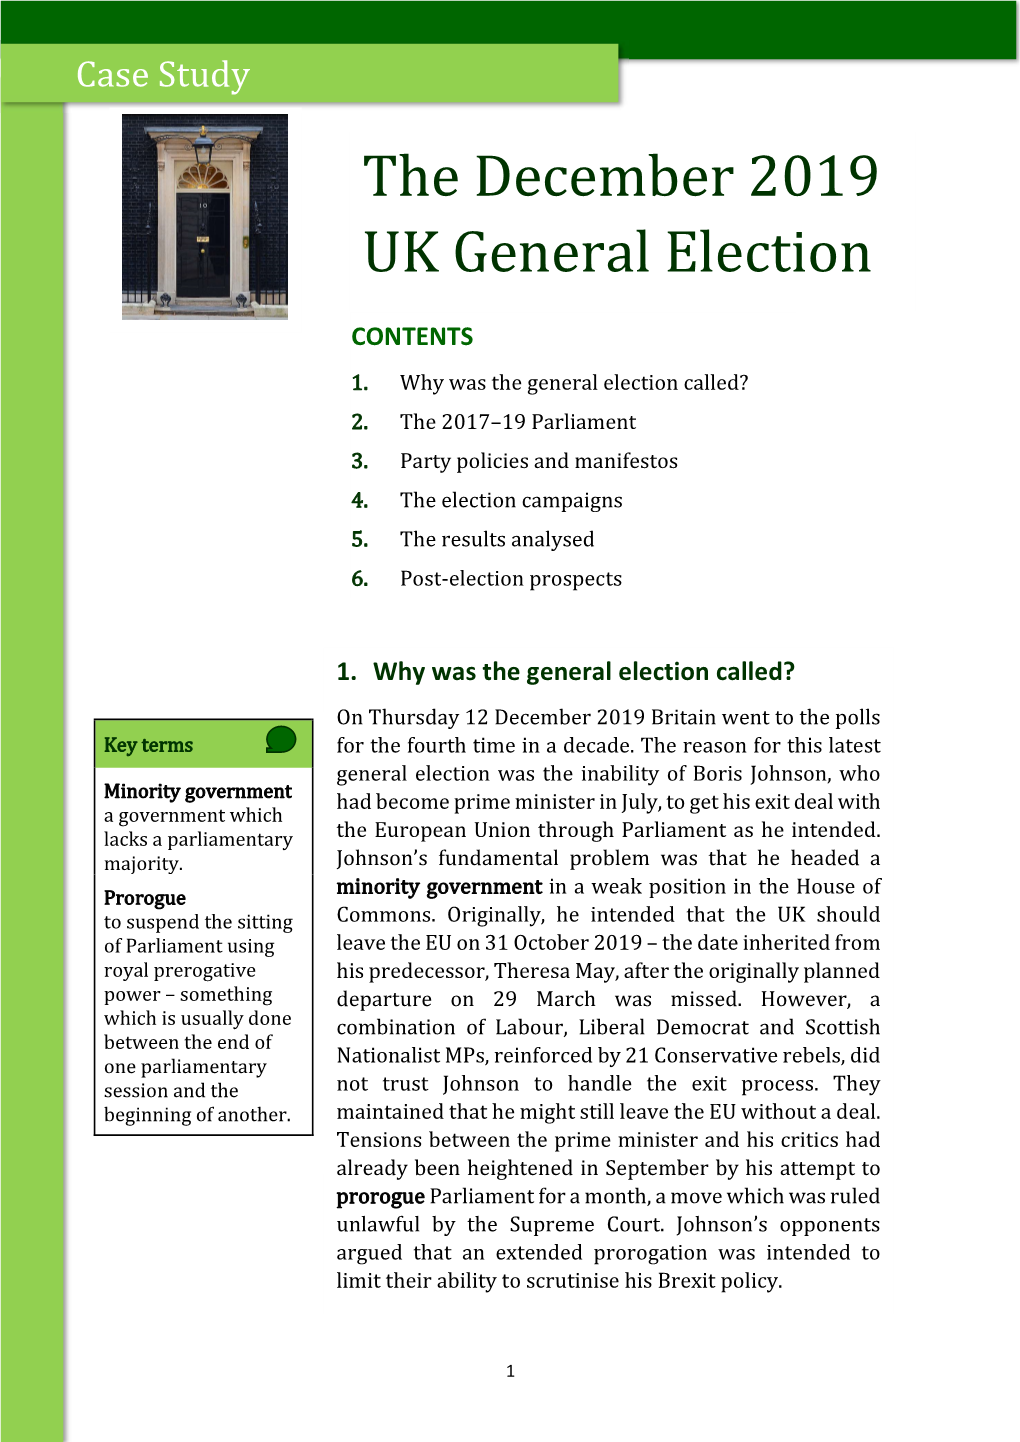 The December 2019 UK General Election